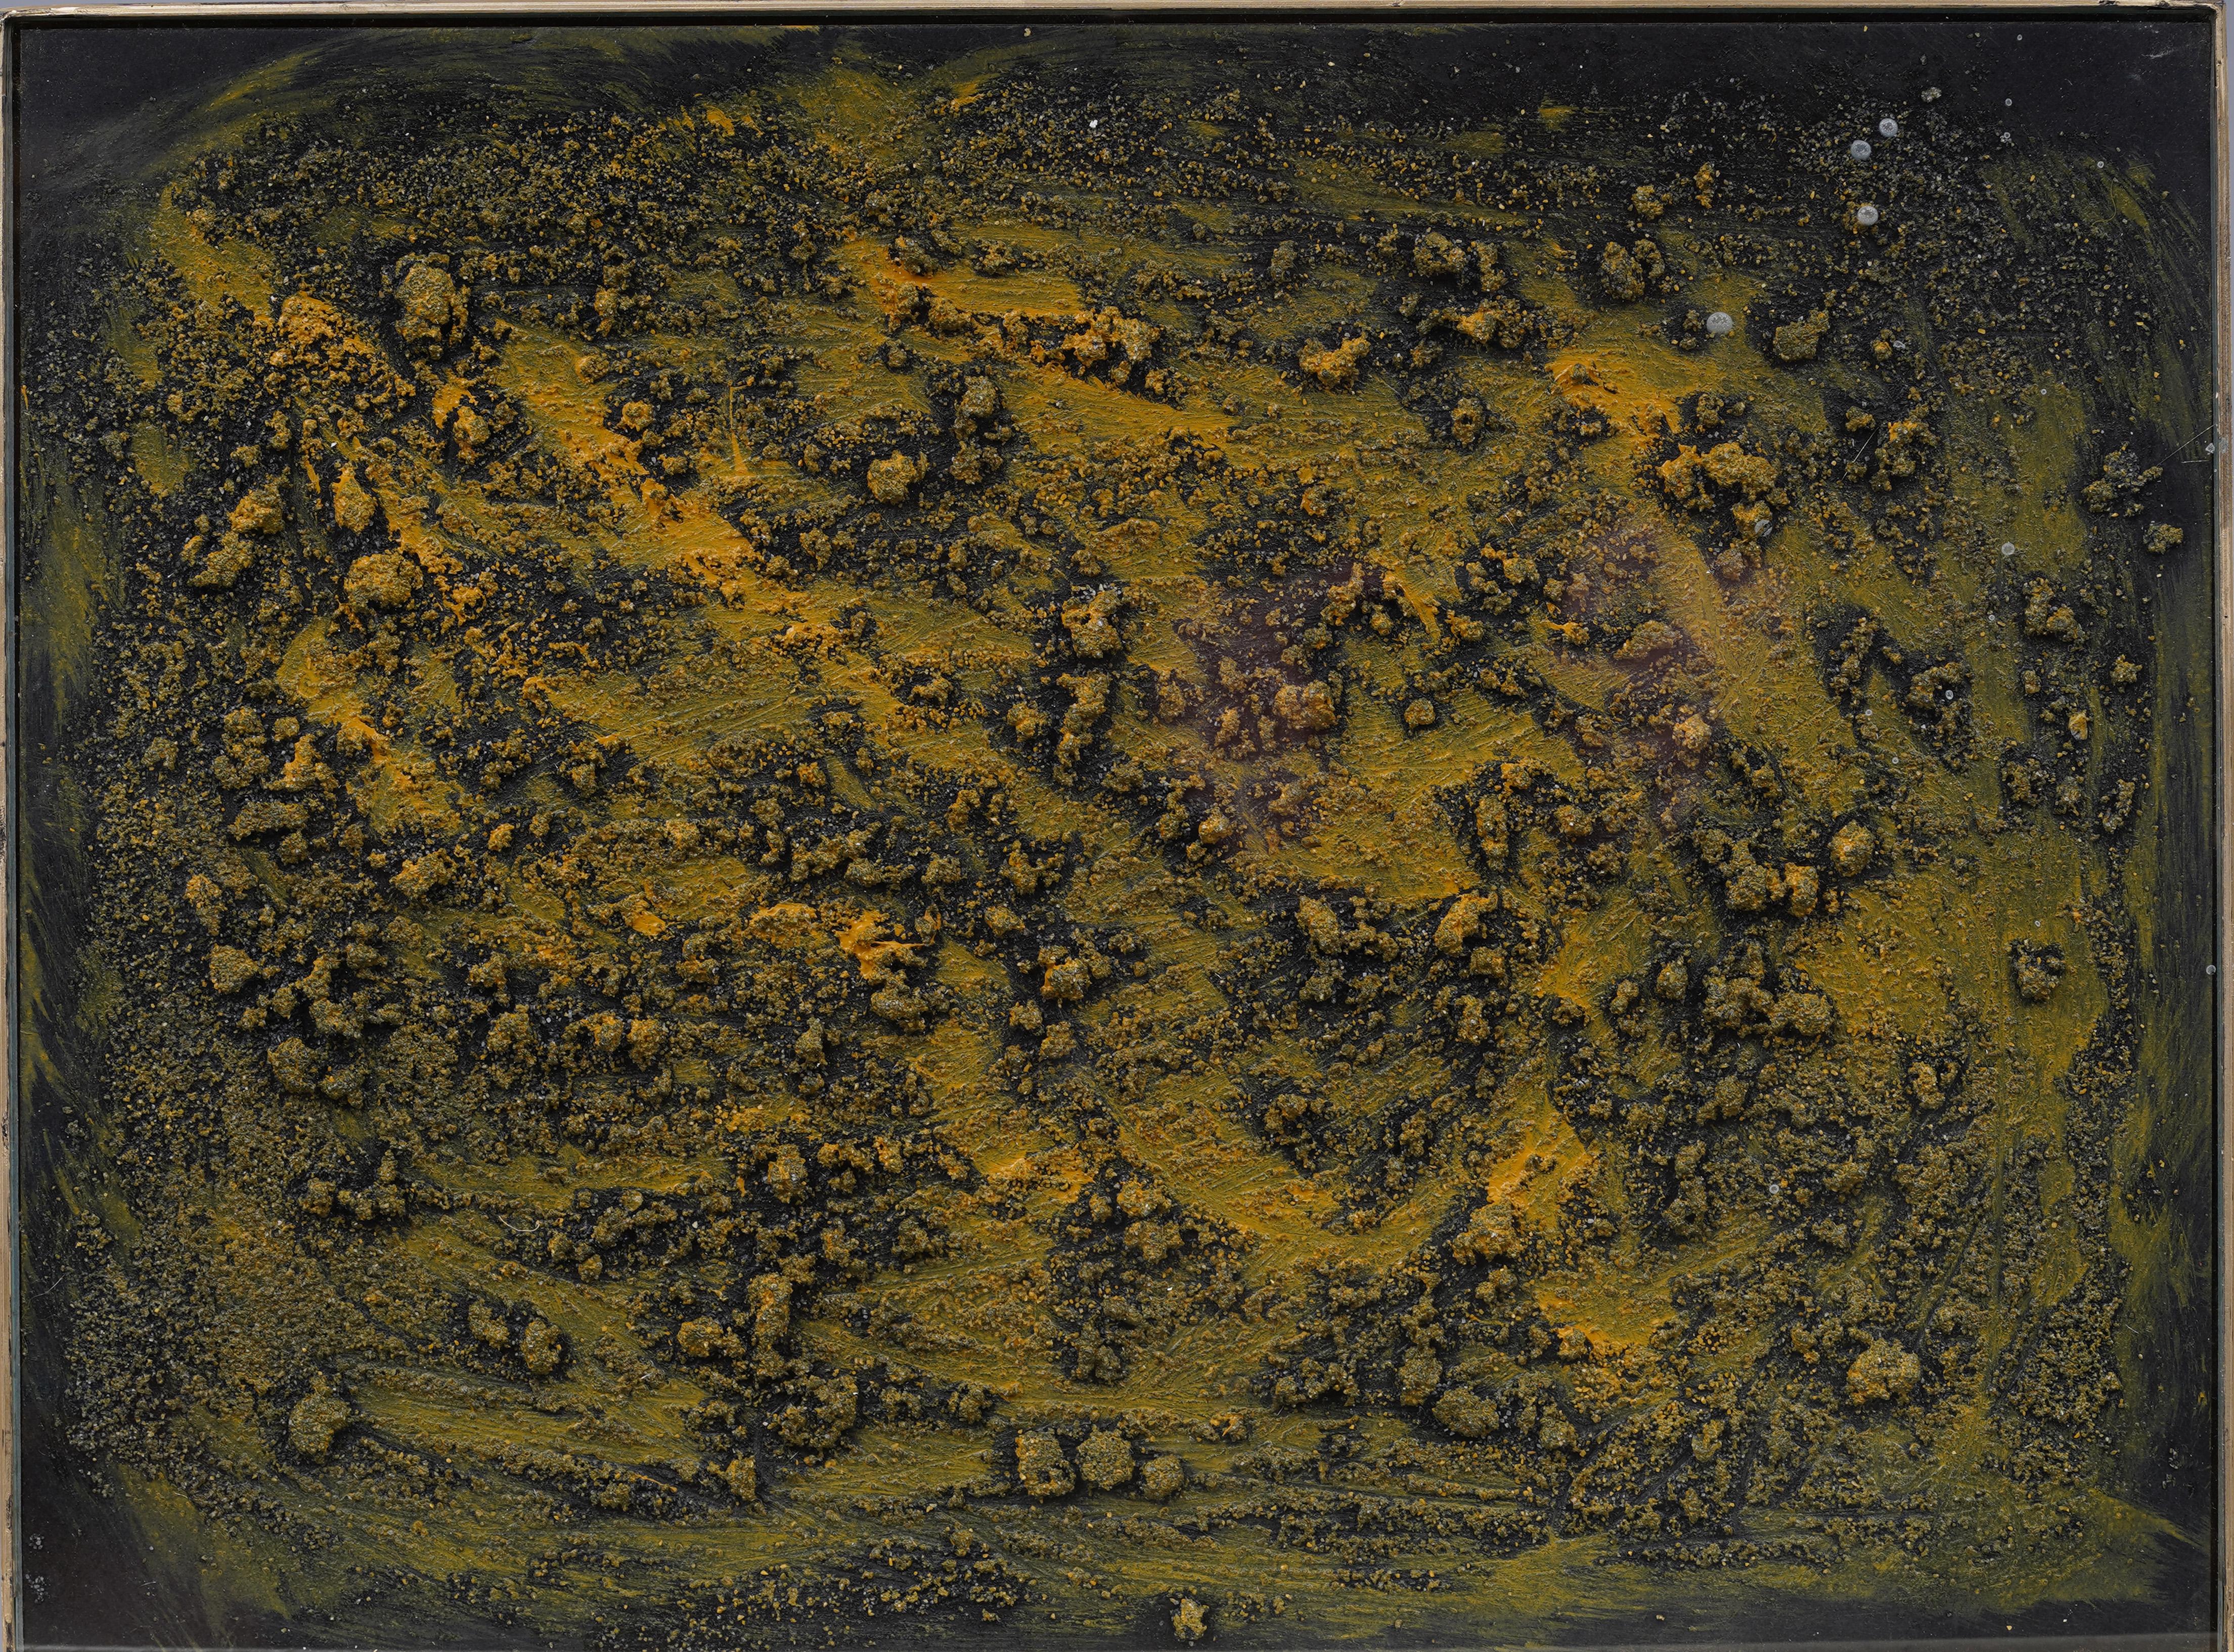 Ancienne peinture à l'huile américaine expressionniste abstraite texturée encadrée, signée NY